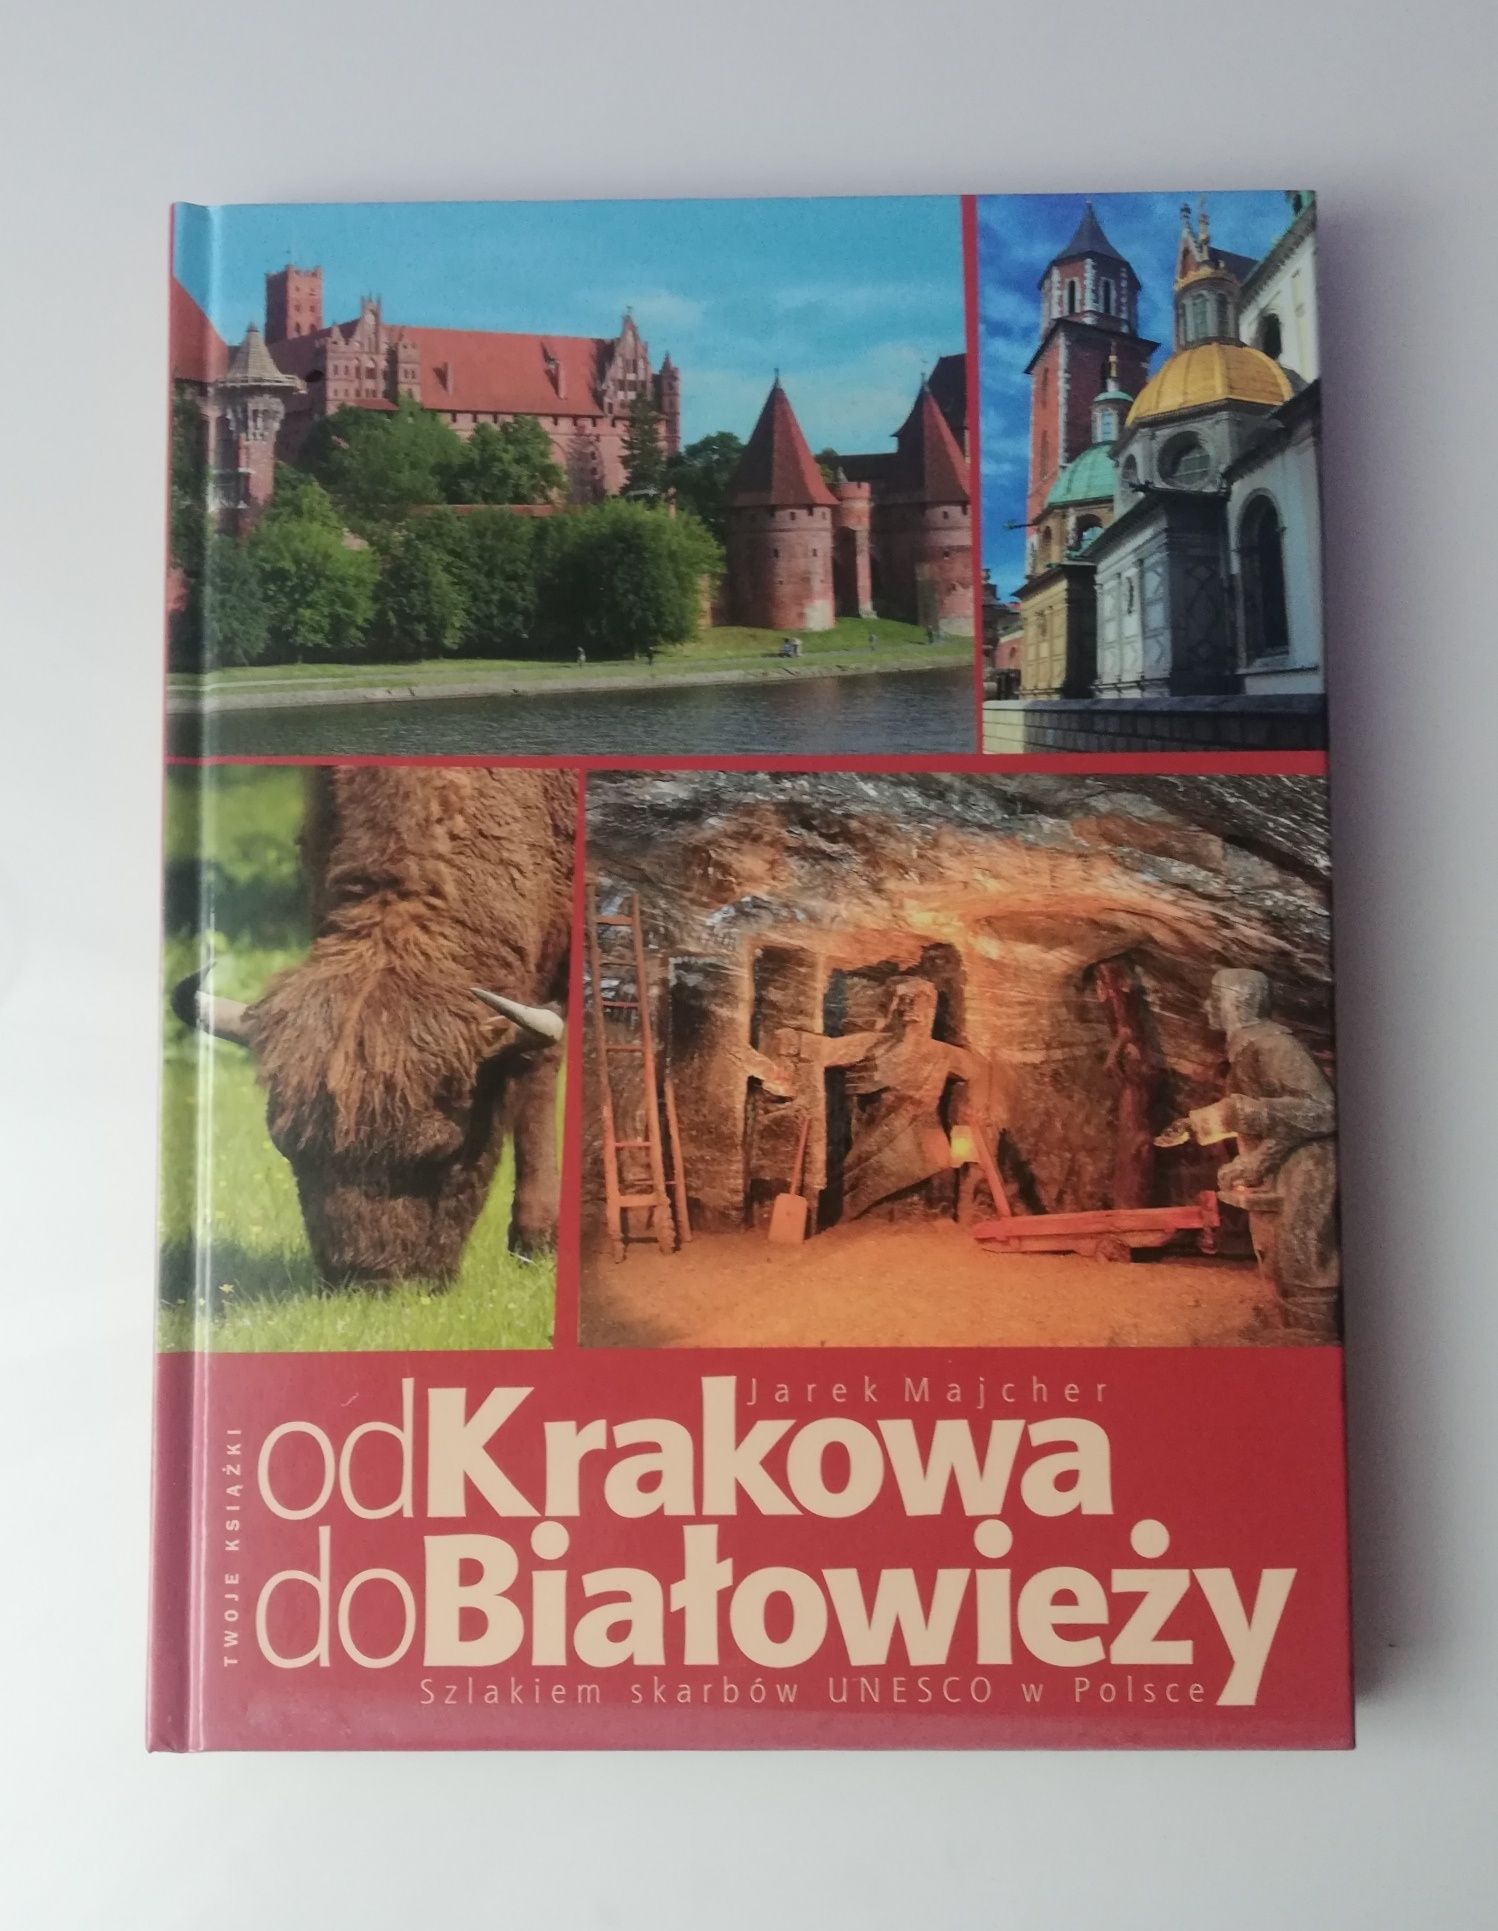 Książka " Od Krakowa do Białowieży" Jarek Majcher